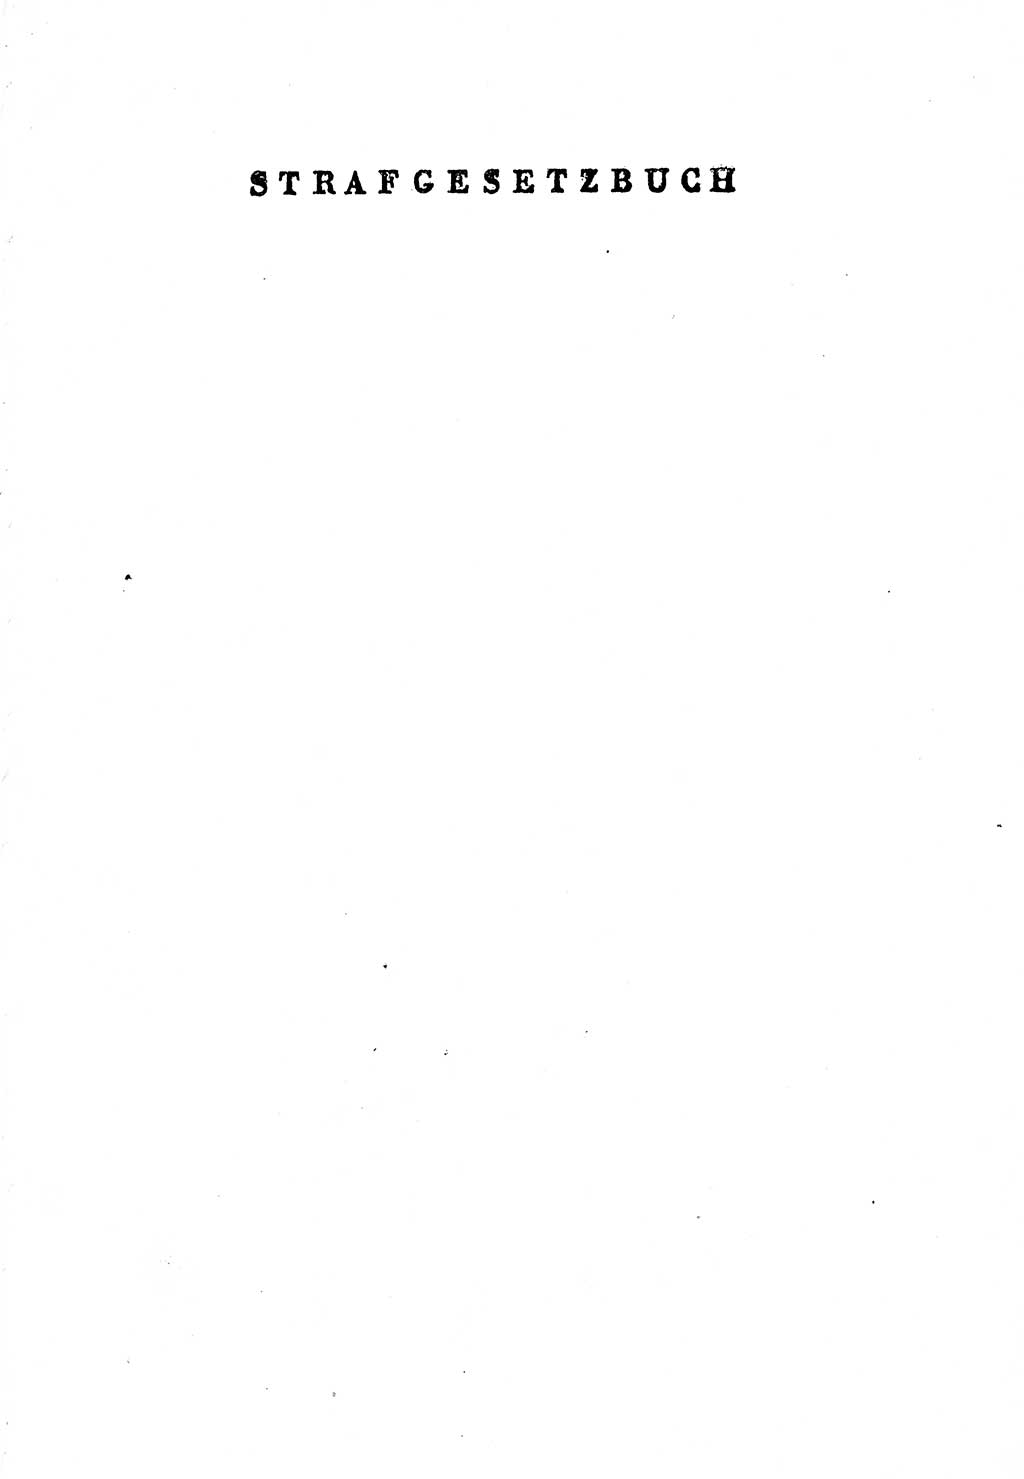 Einleitung Strafgesetzbuch (StGB) und andere Strafgesetze [Deutsche Demokratische Republik (DDR)] 1956, Seite 1 (Einl. StGB Strafges. DDR 1956, S. 1)